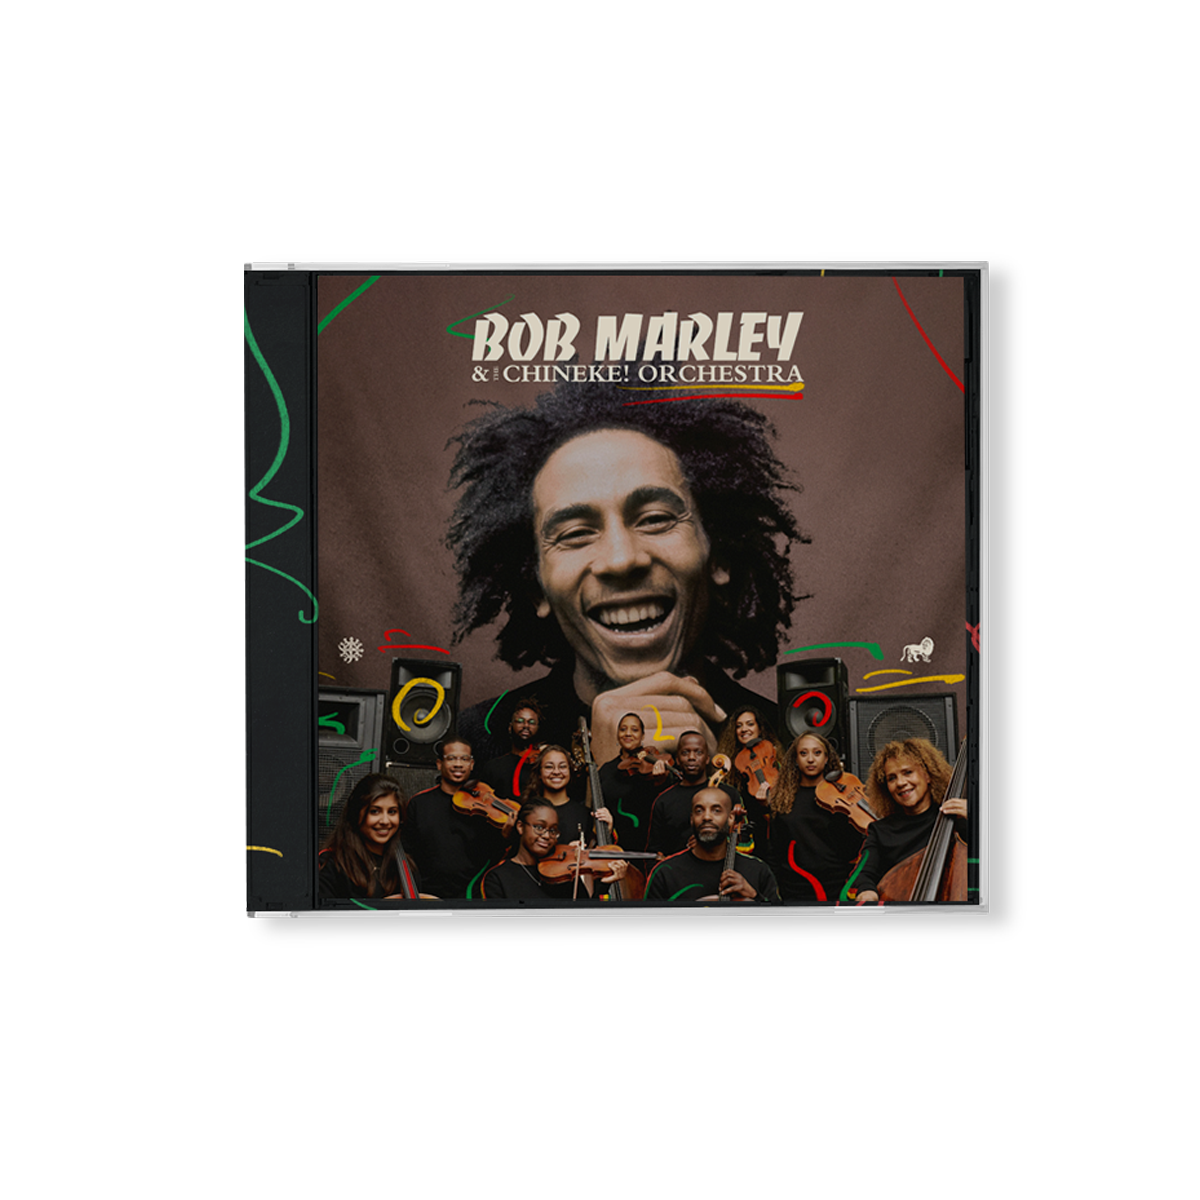 Bob Marley & The Wailers, Chineke! Orchestra - Bob Marley with the Chineke! Orchestra: Standard CD